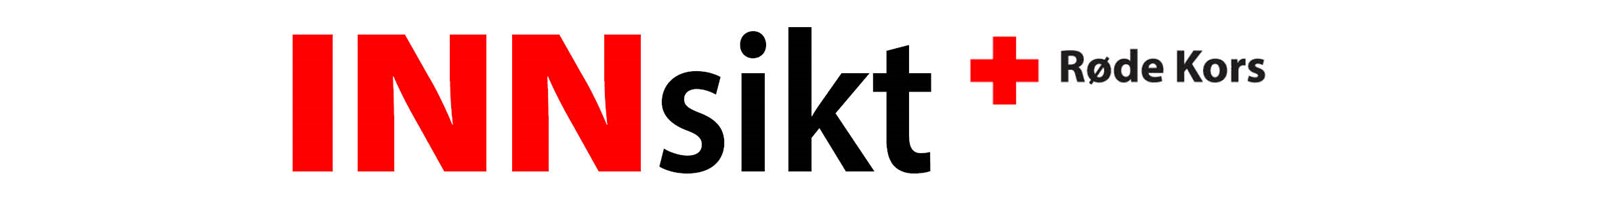 Logo som brukes på nyhetsbrevet  INNsikt